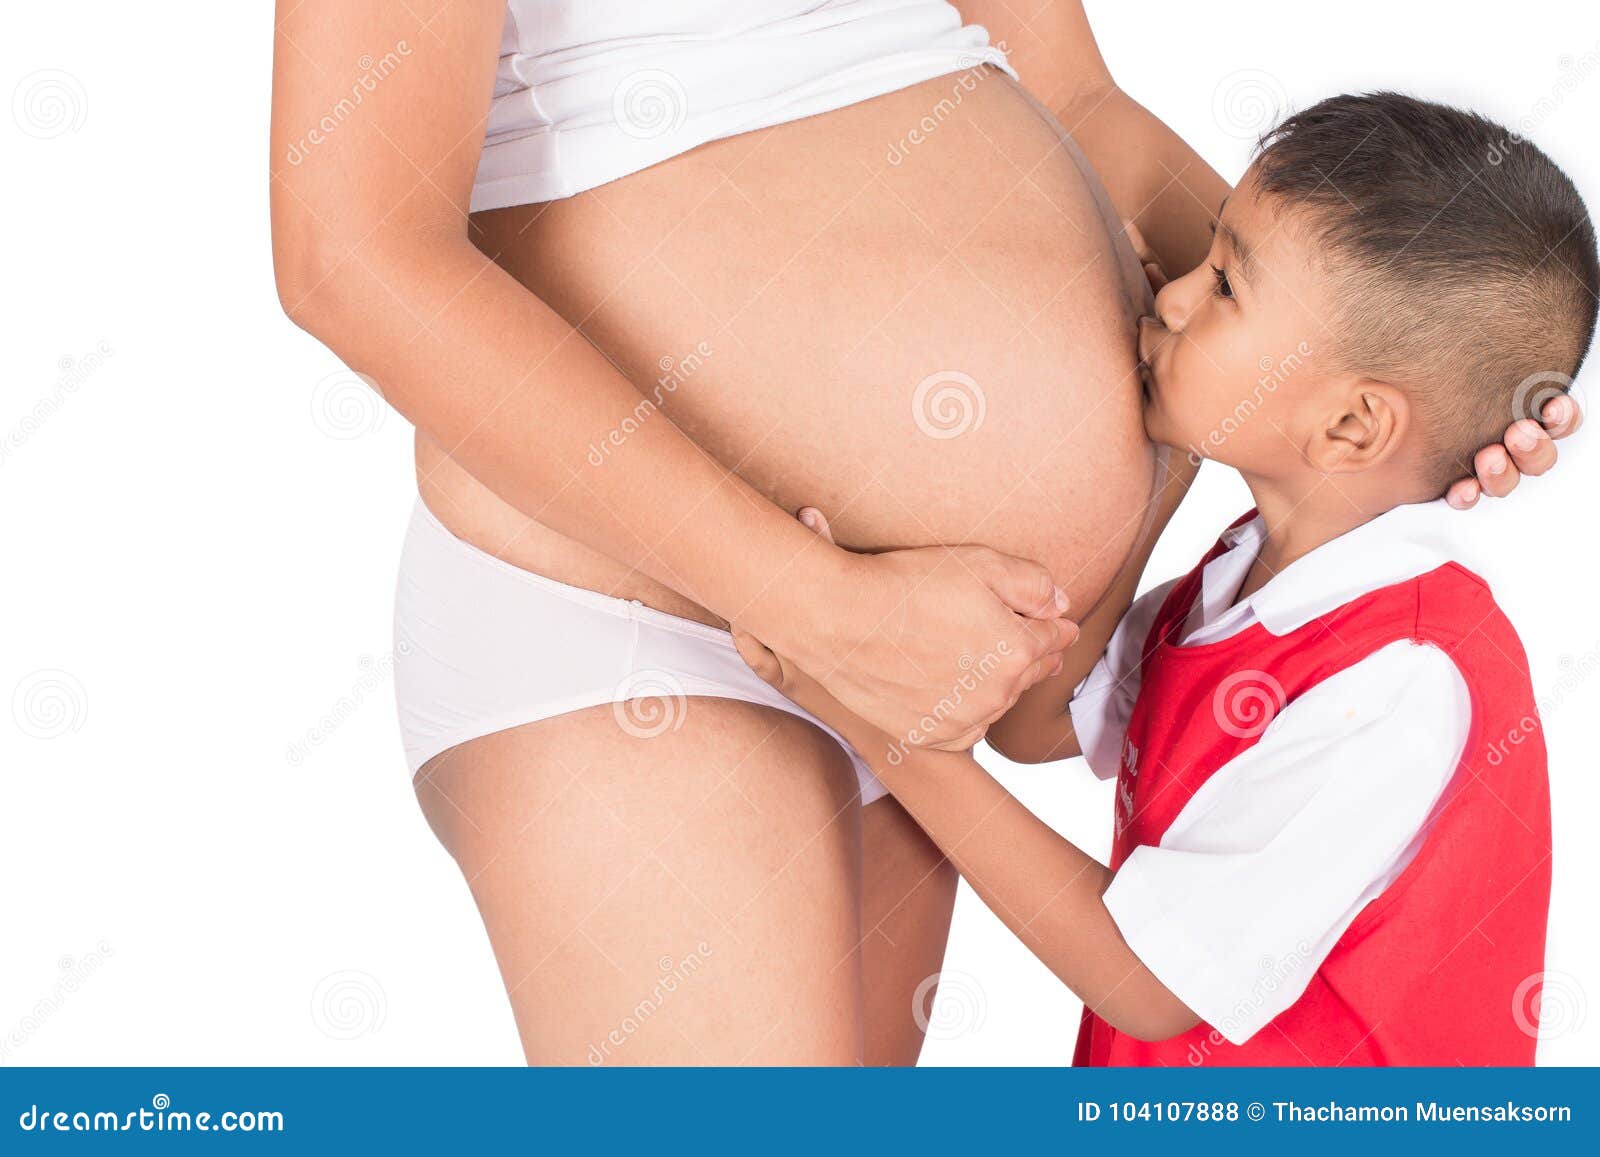 Хочу потрогать маму. Ребёнок трогоет живот маме. Ребёнок трогает живот матери. Малыш и мама трогают живот. Ребенок целует маму в живот.